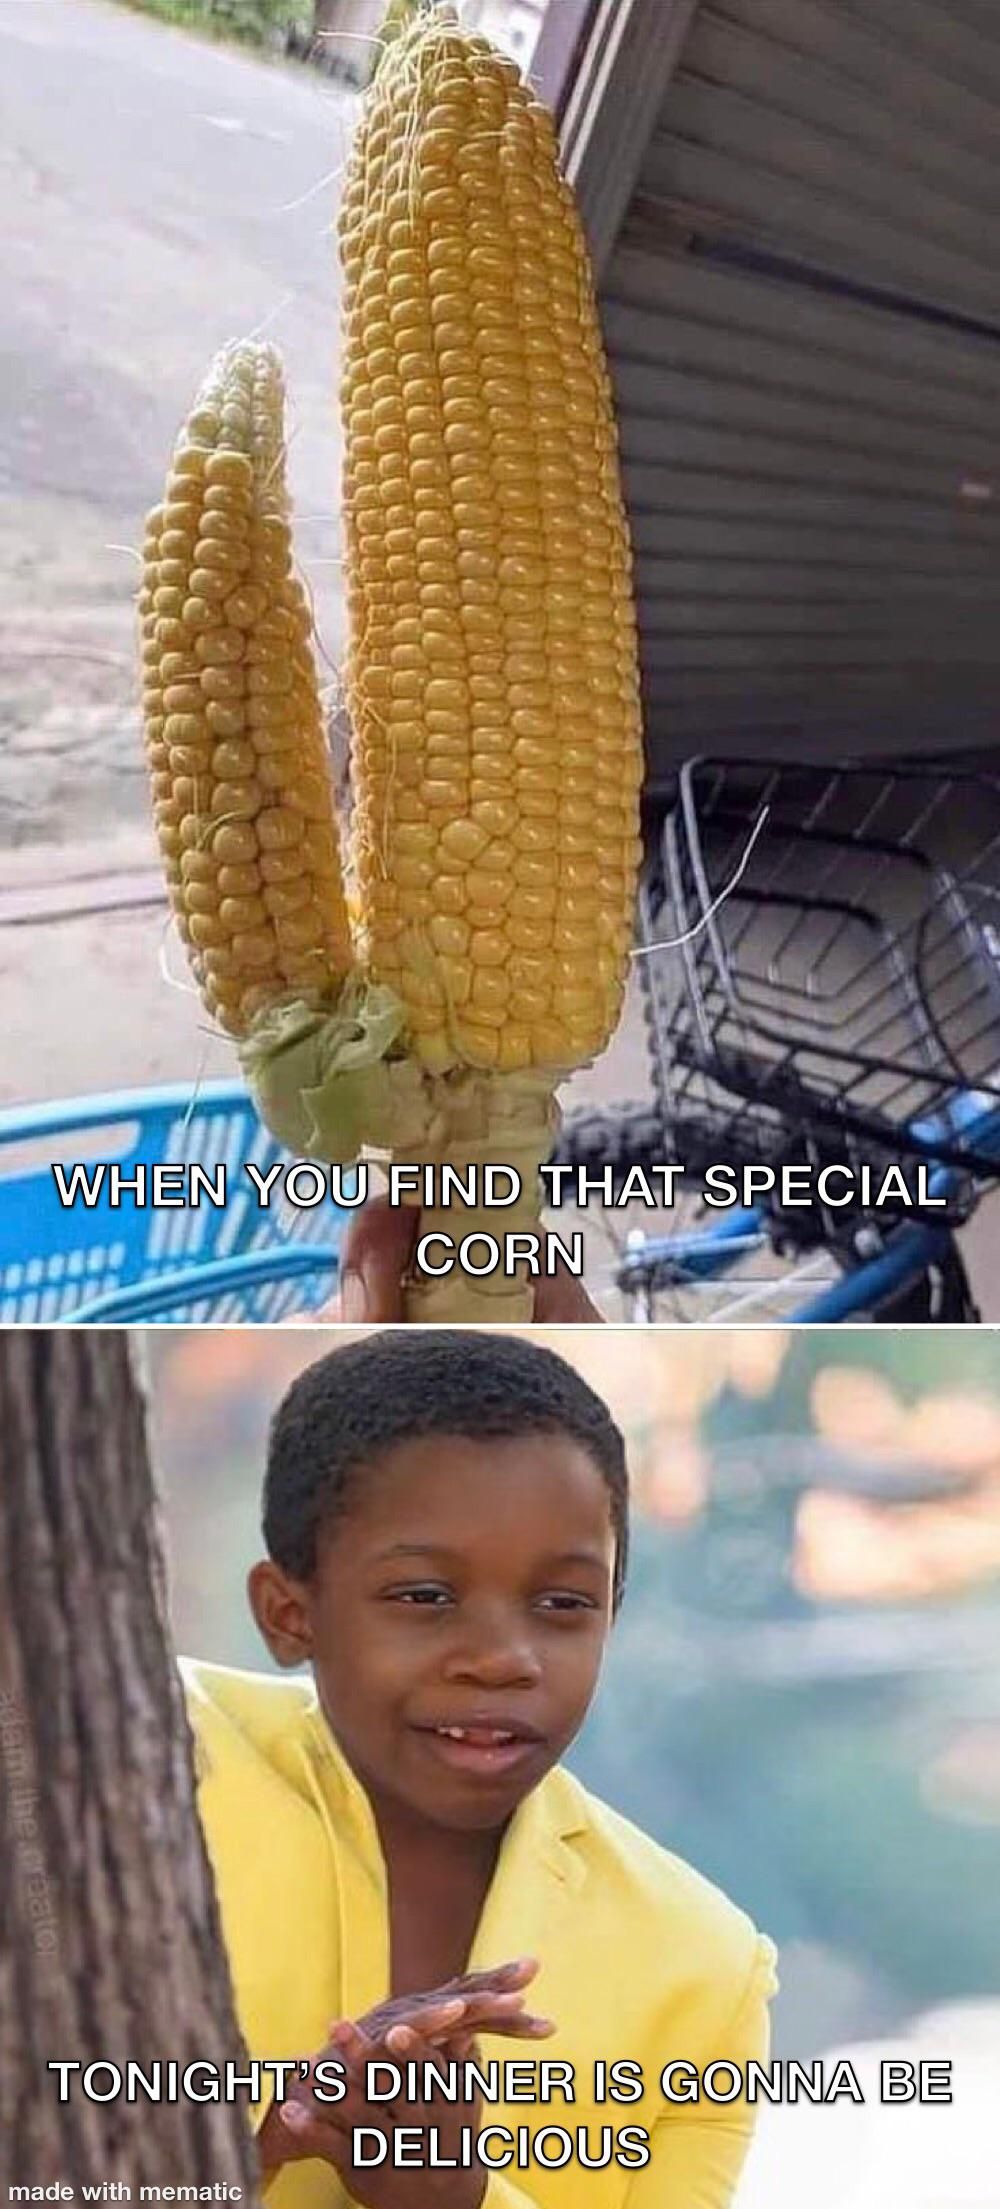 A true love for corn